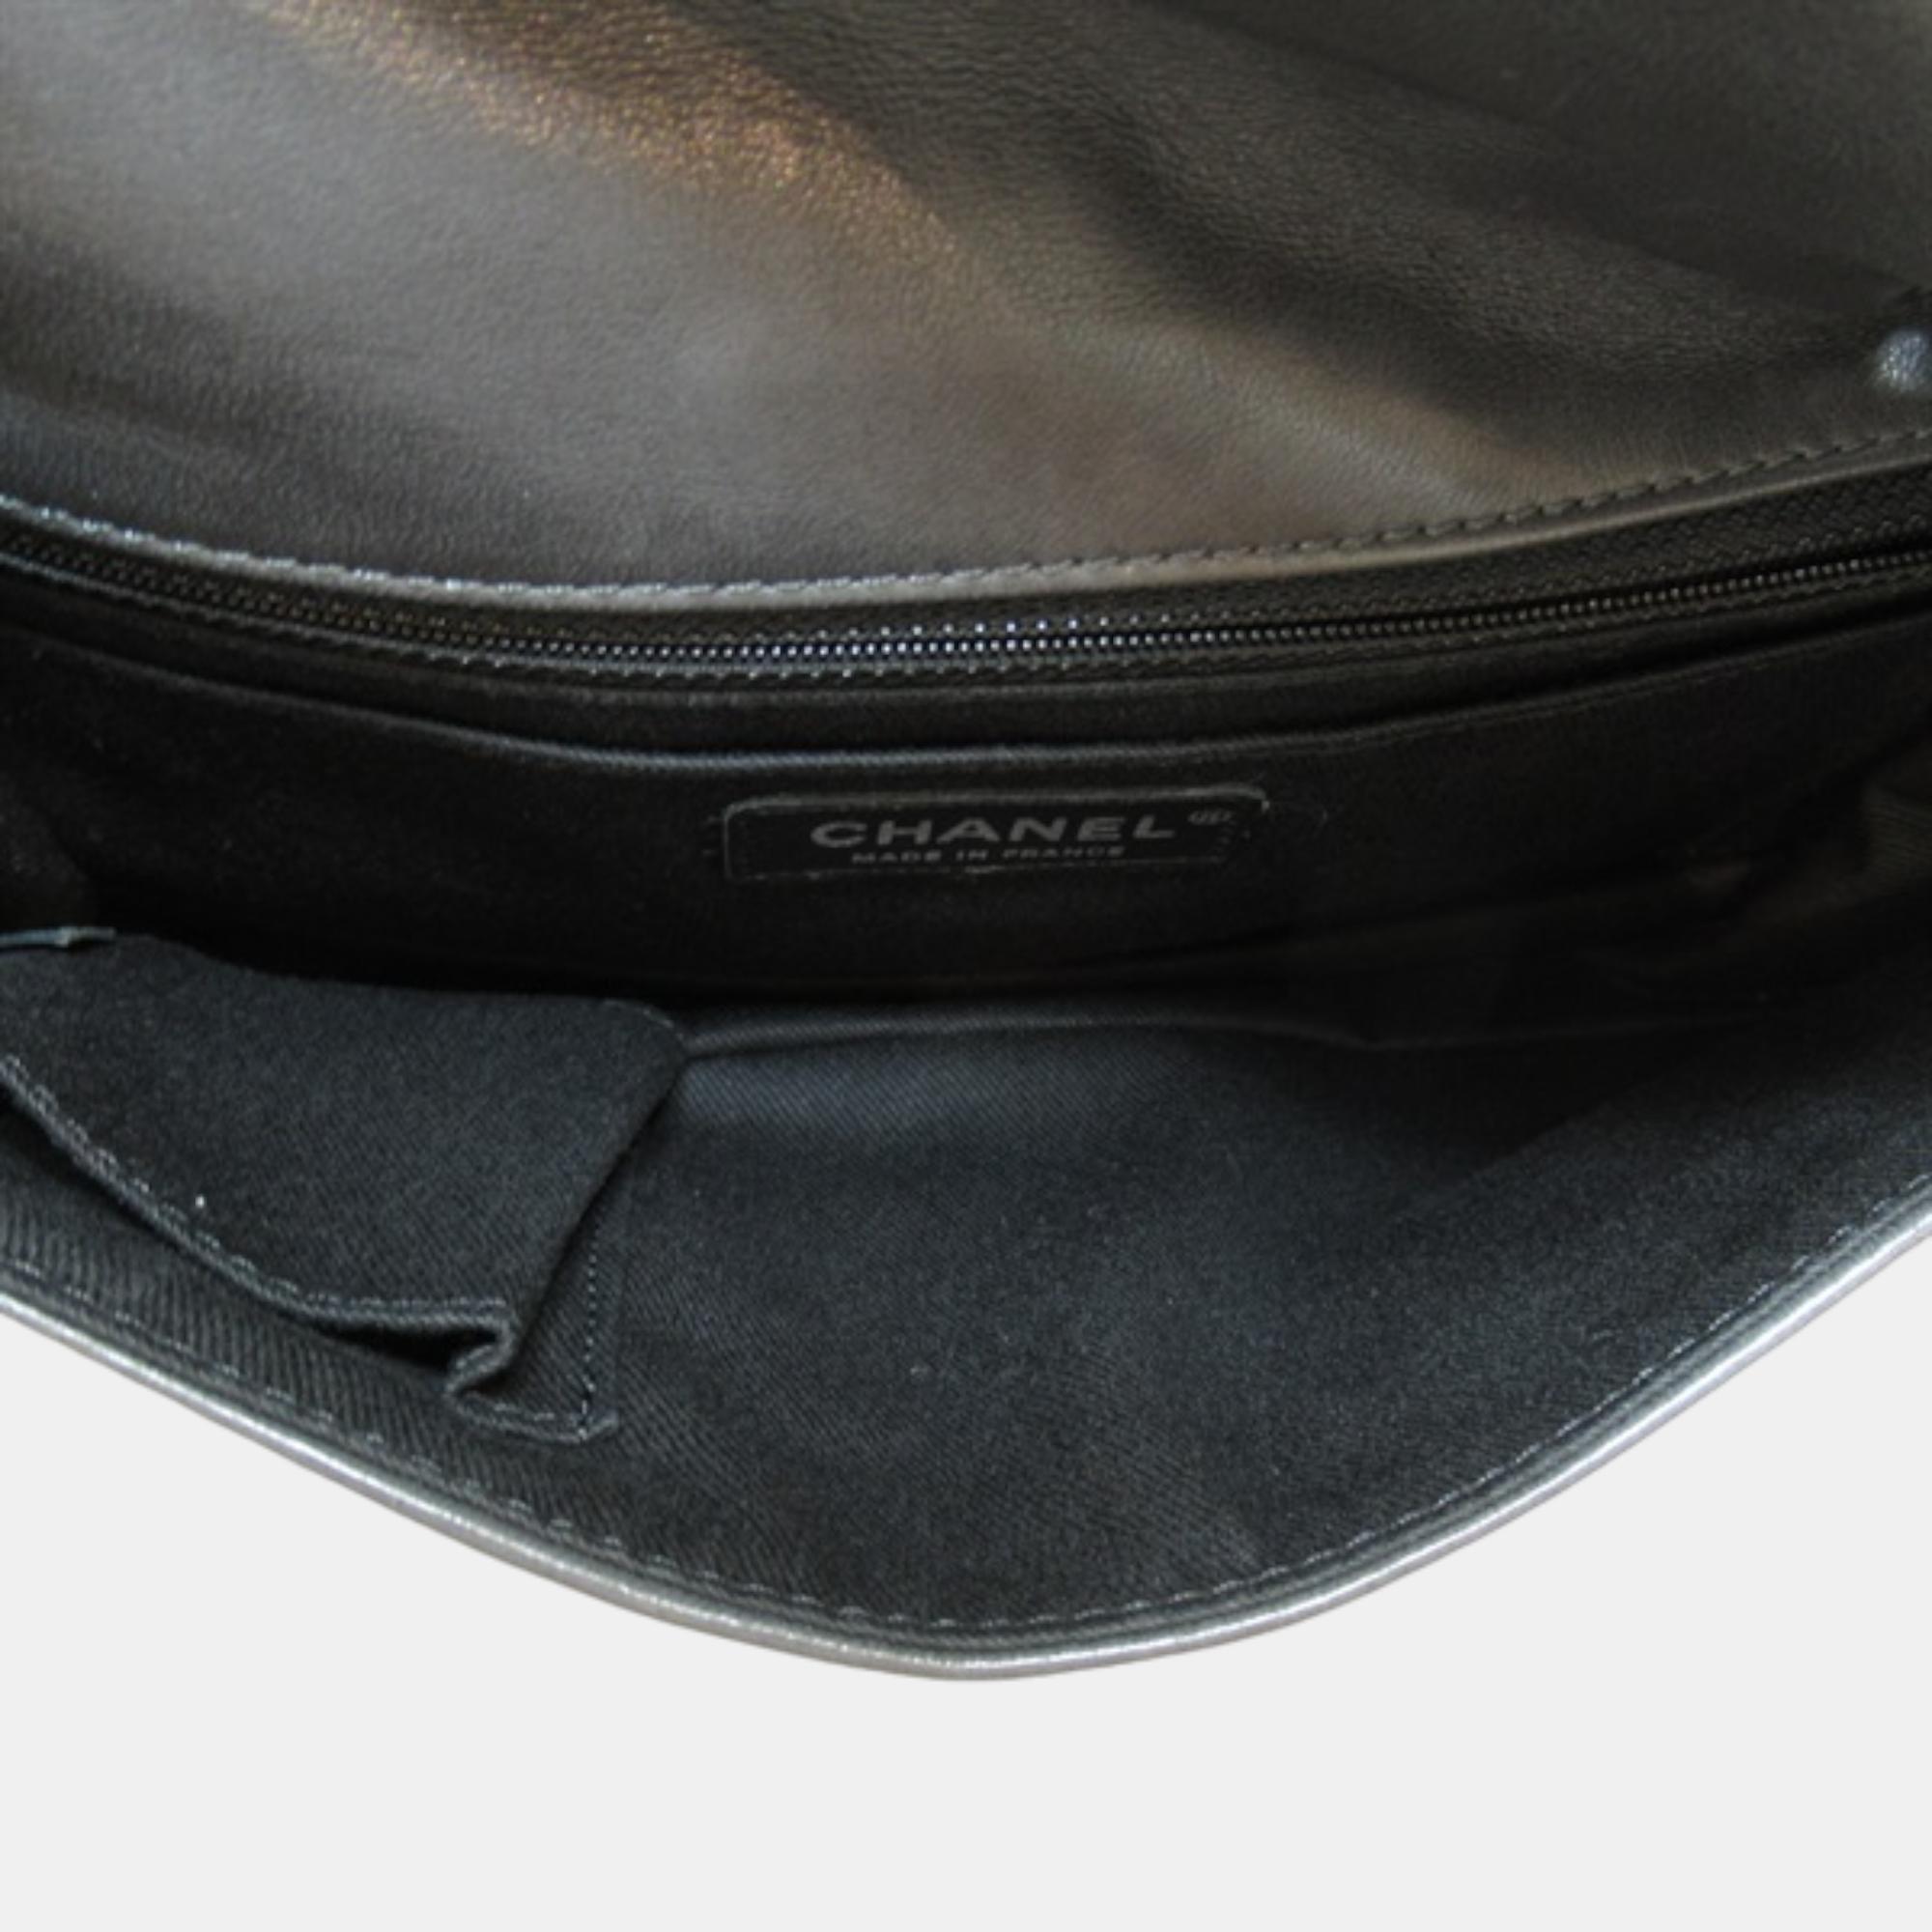 Chanel Black Leather CC Timeless Shoulder Bag